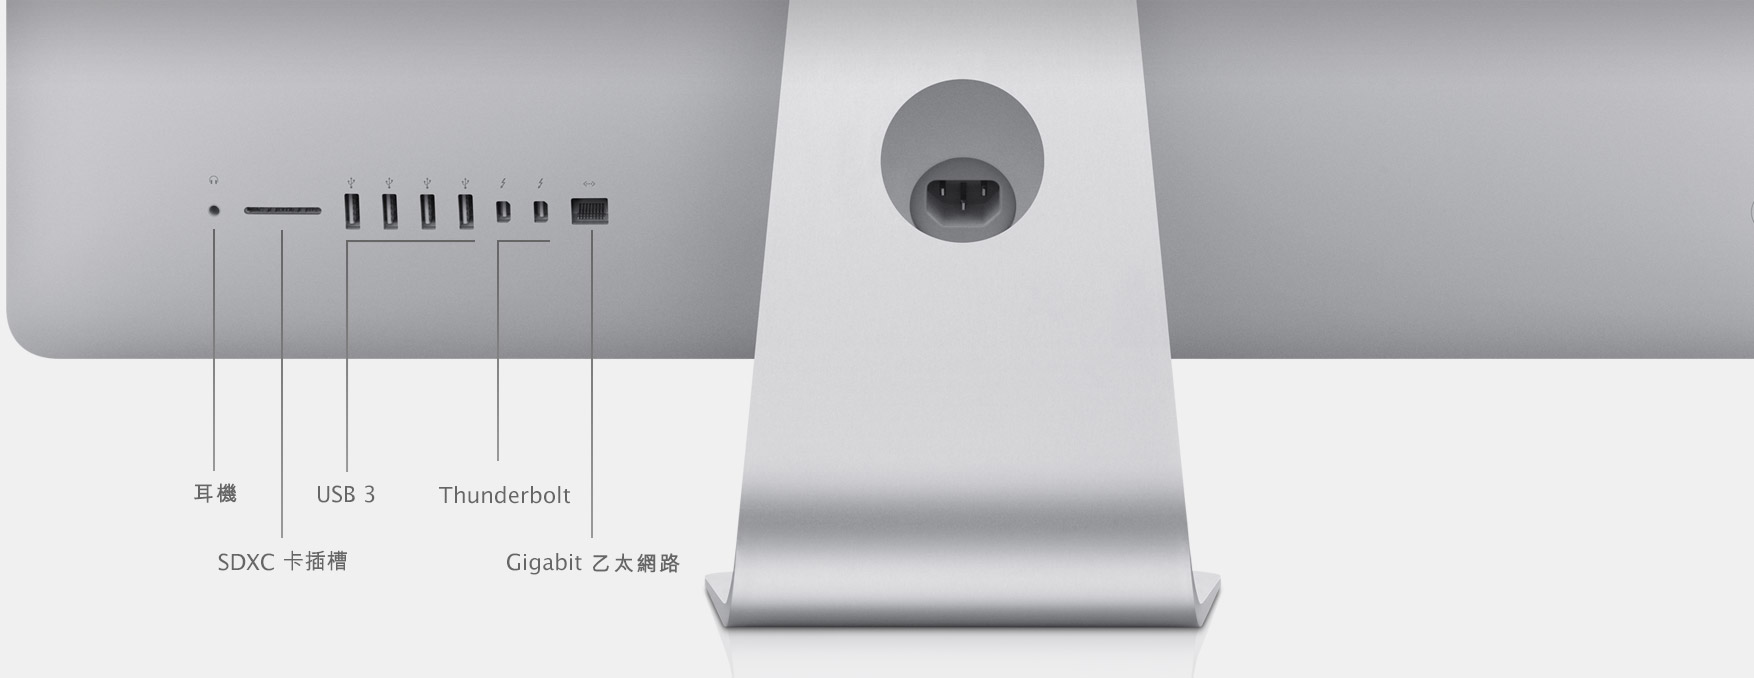 PC/タブレット デスクトップ型PC iMac (21.5 英吋, 2013 年末) - 技術規格(台灣)